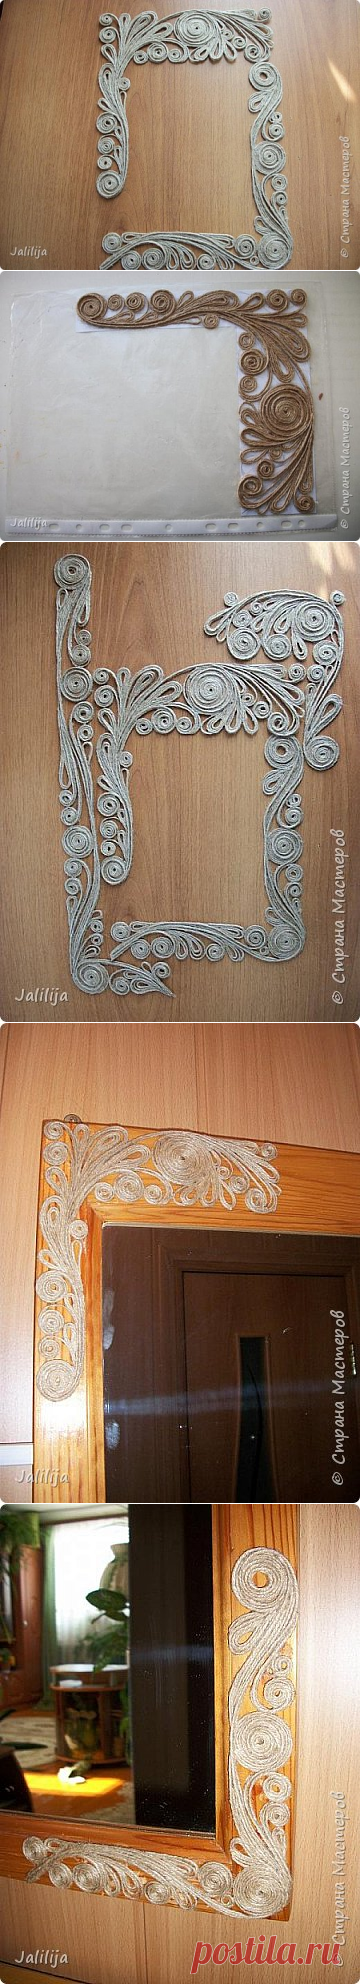 Декорирование зеркала в технике джутовой филиграни. | Страна Мастеров